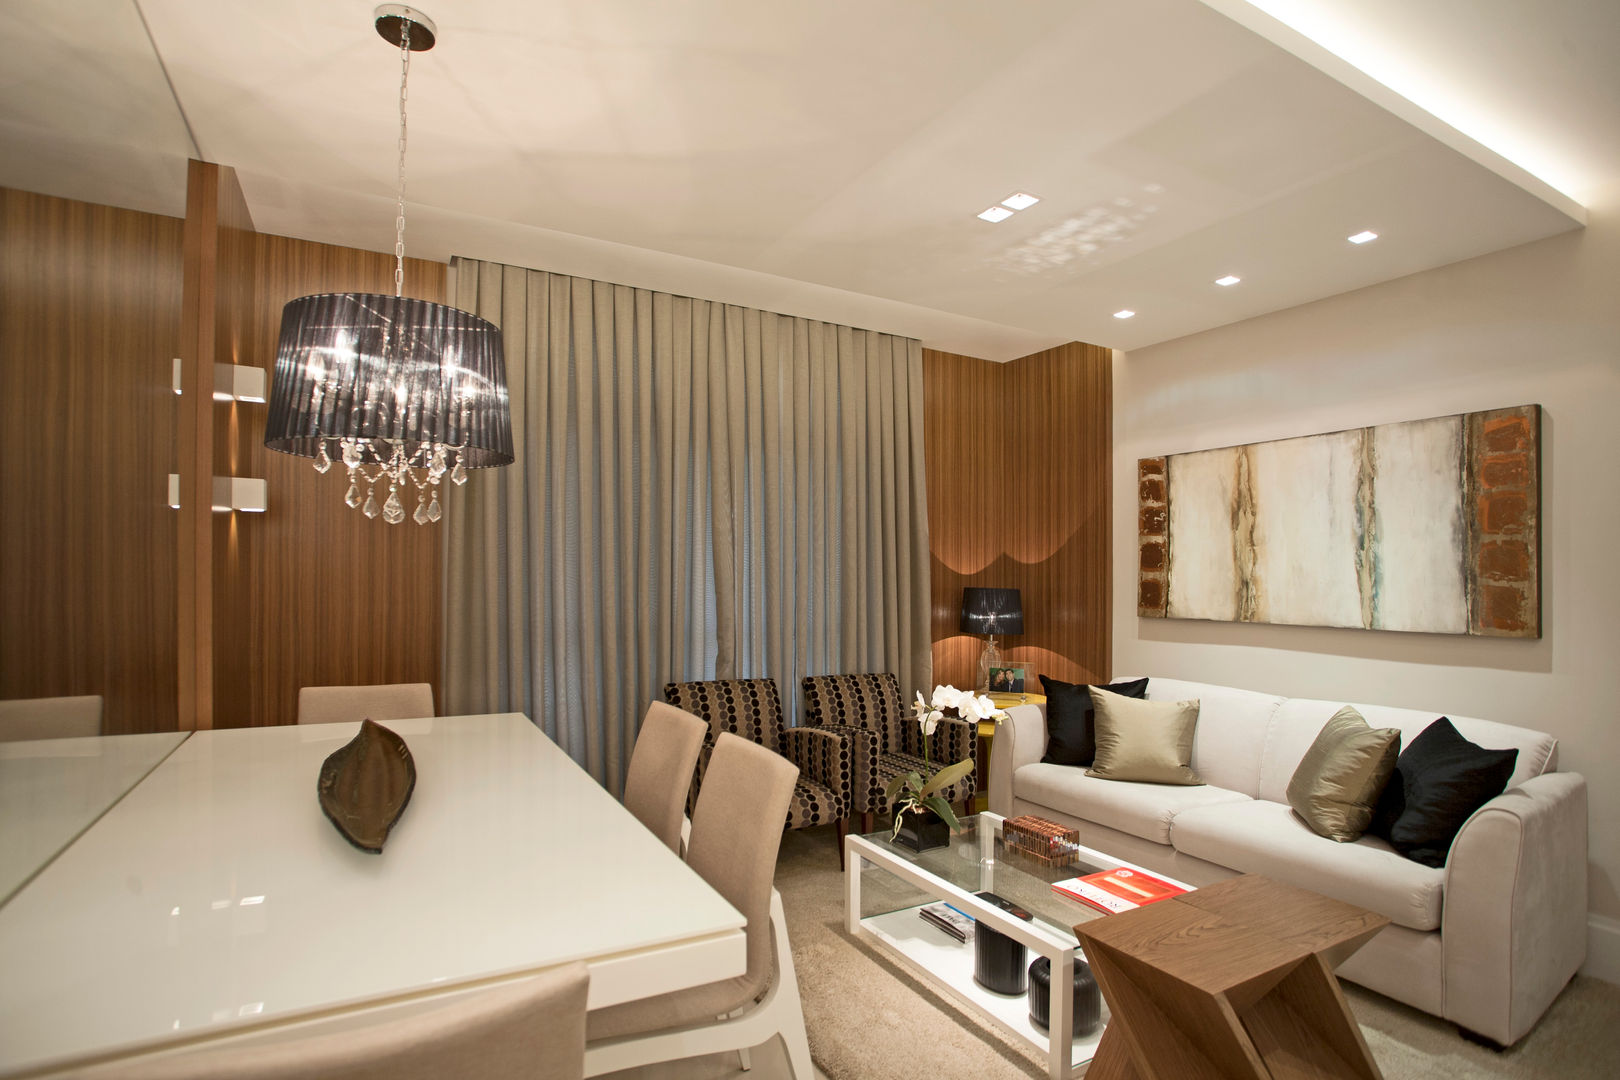 Design de interior completo no apartamento do casal!, Andréa Spelzon Interiores Andréa Spelzon Interiores Salas de estilo moderno